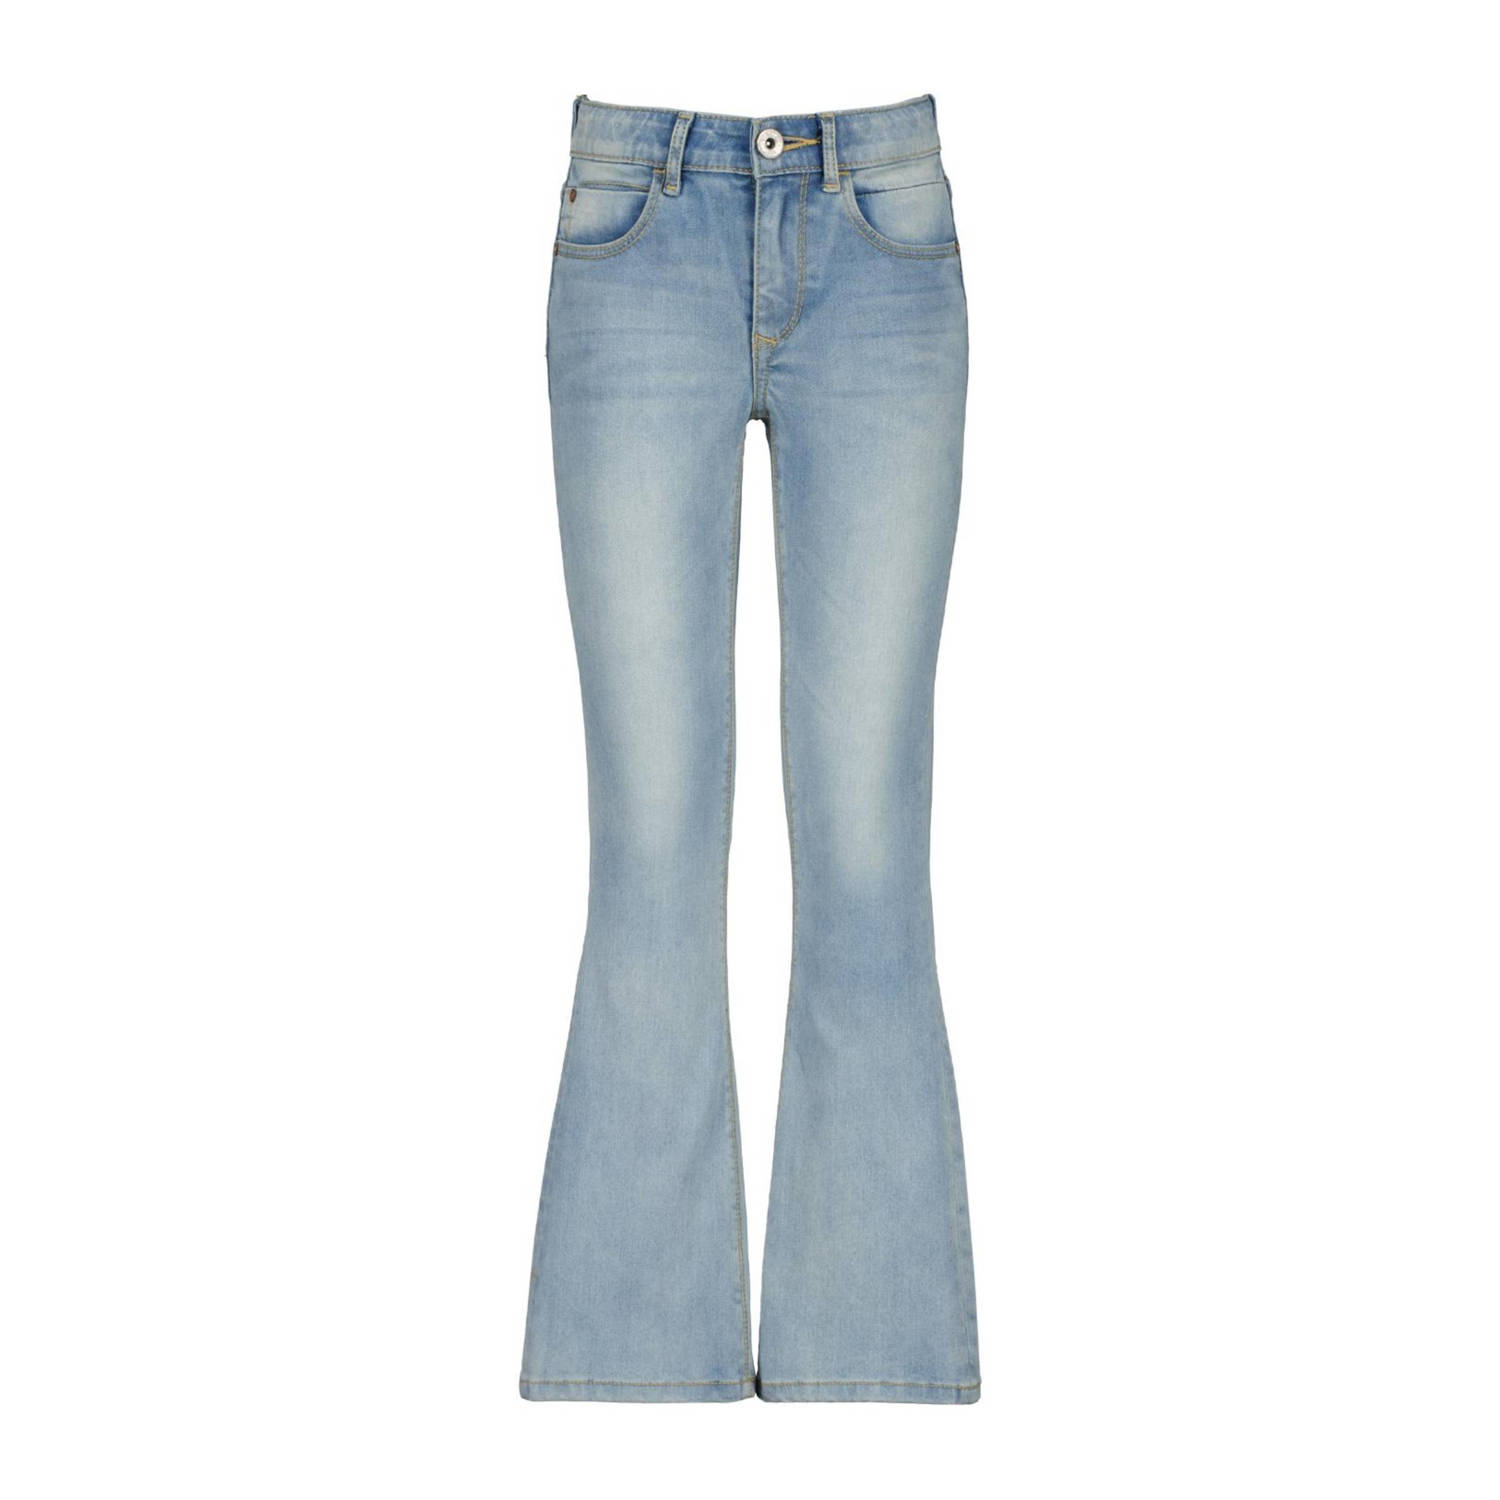 VINGINO flared jeans Abbey light vintage Blauw Meisjes Stretchdenim Effen 128